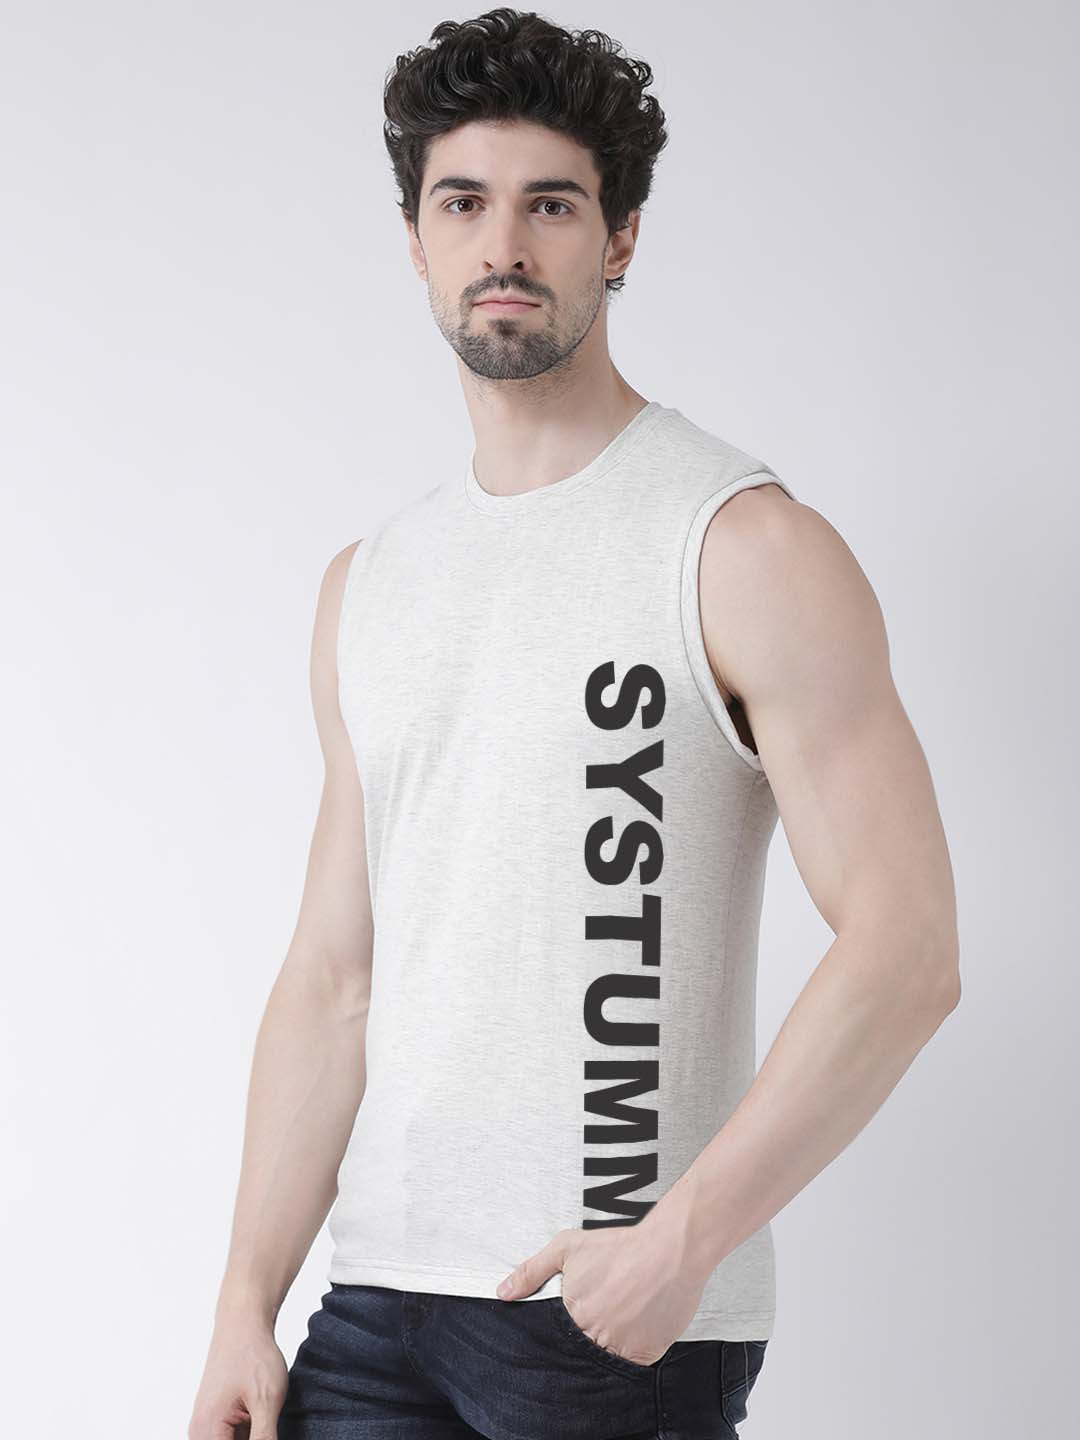 Men System Printed Cotton Gym Vest - Friskers